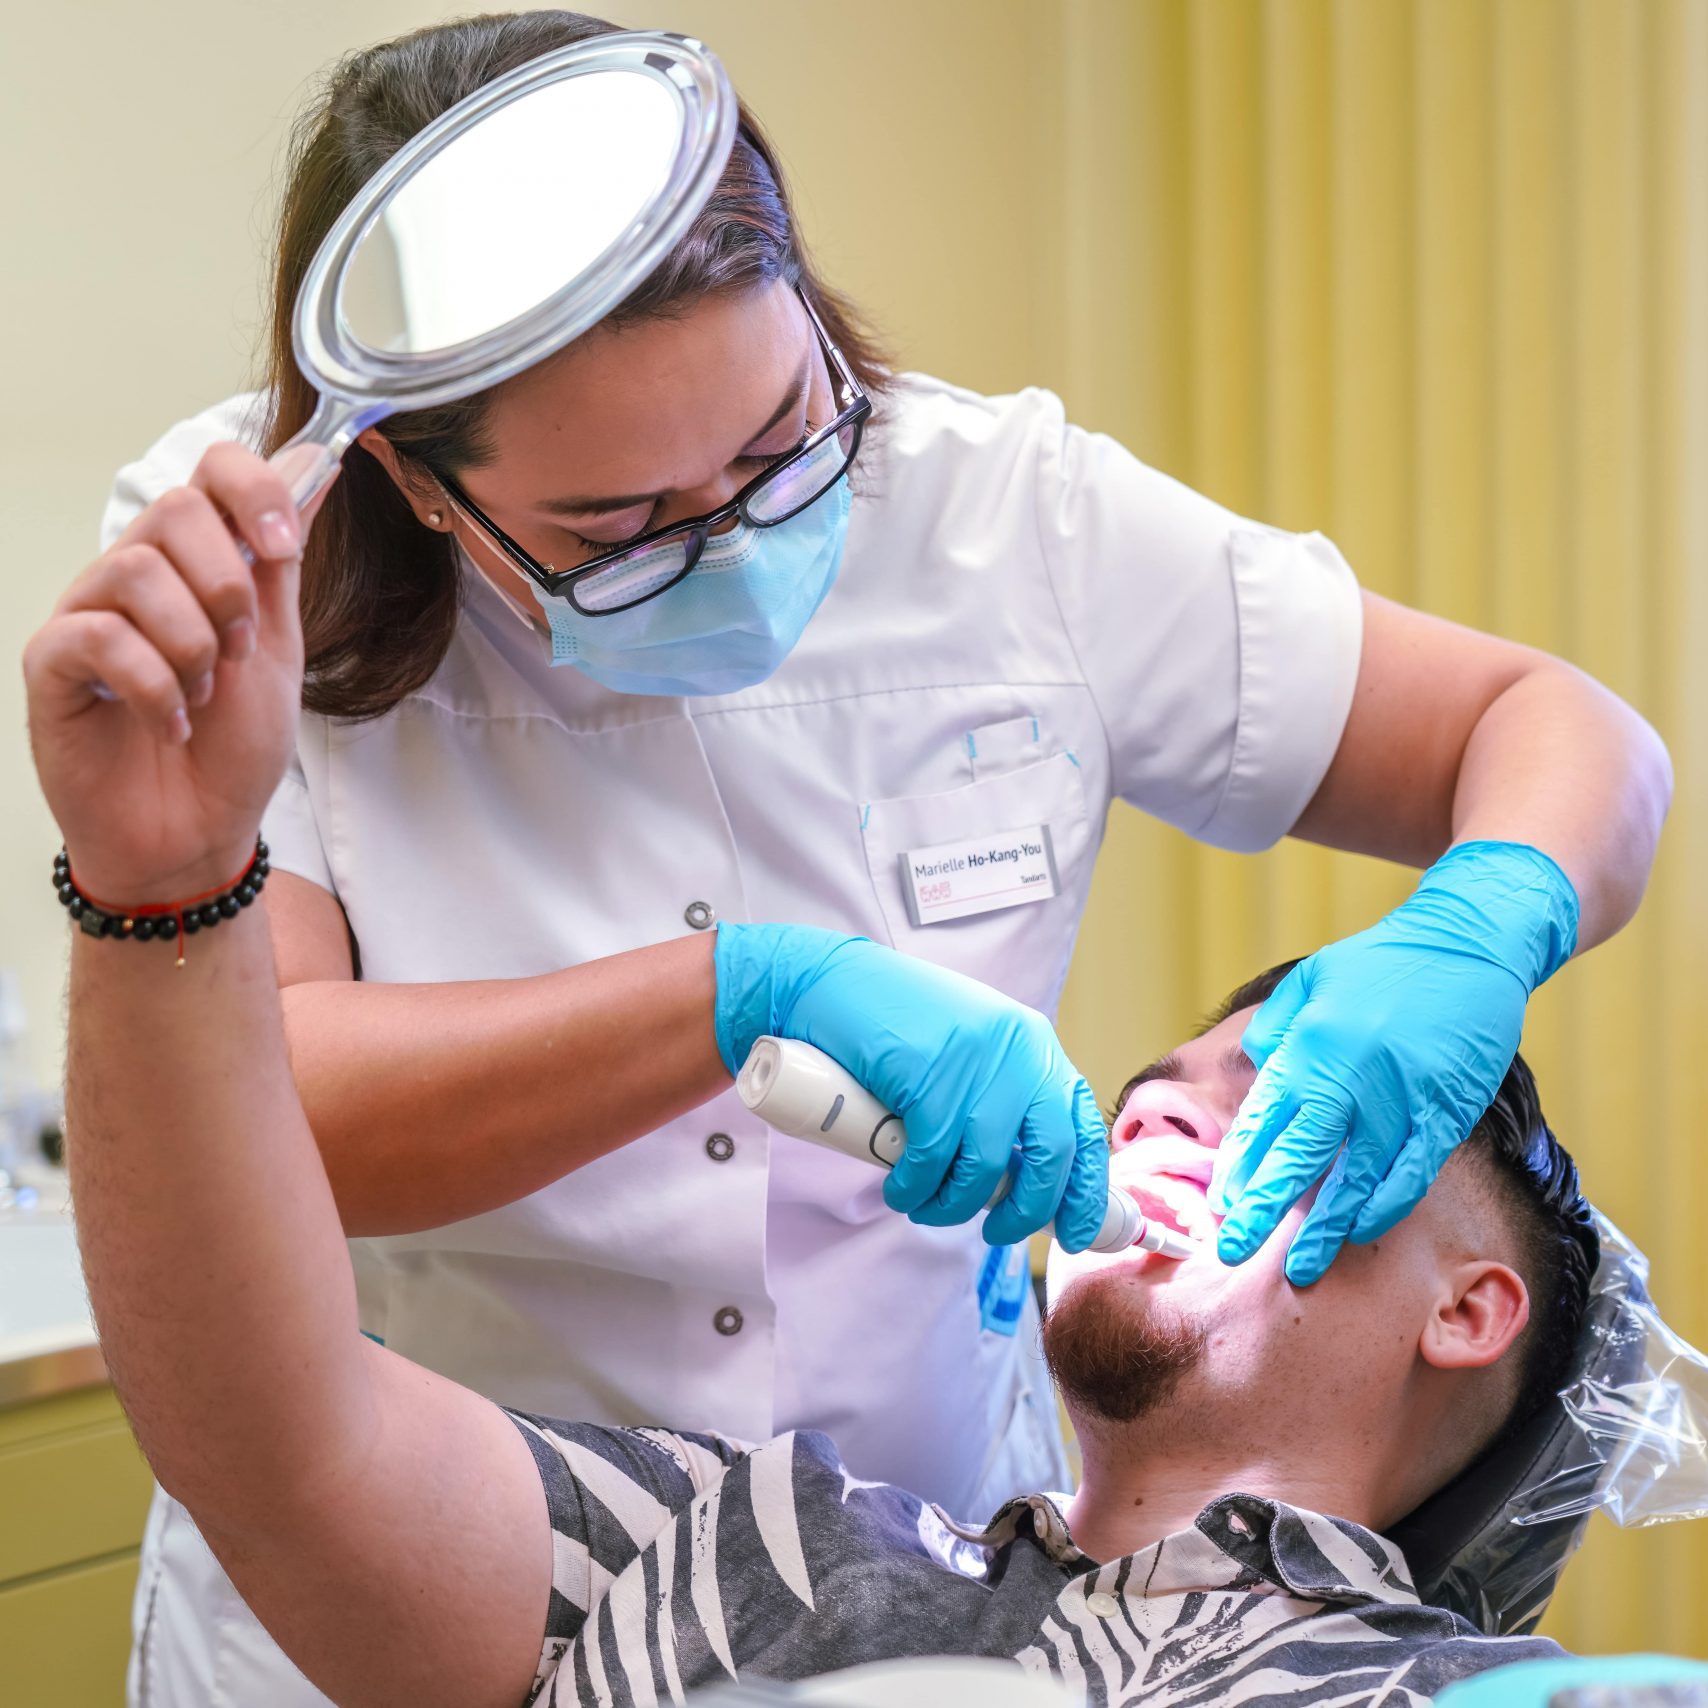 Odontologų rūmai pateikė pasiūlymus Sveikatos apsaugos ministerijai (SAM) dėl profesinės kvalifikacijos tobulinimo proceso kokybės gerinimo